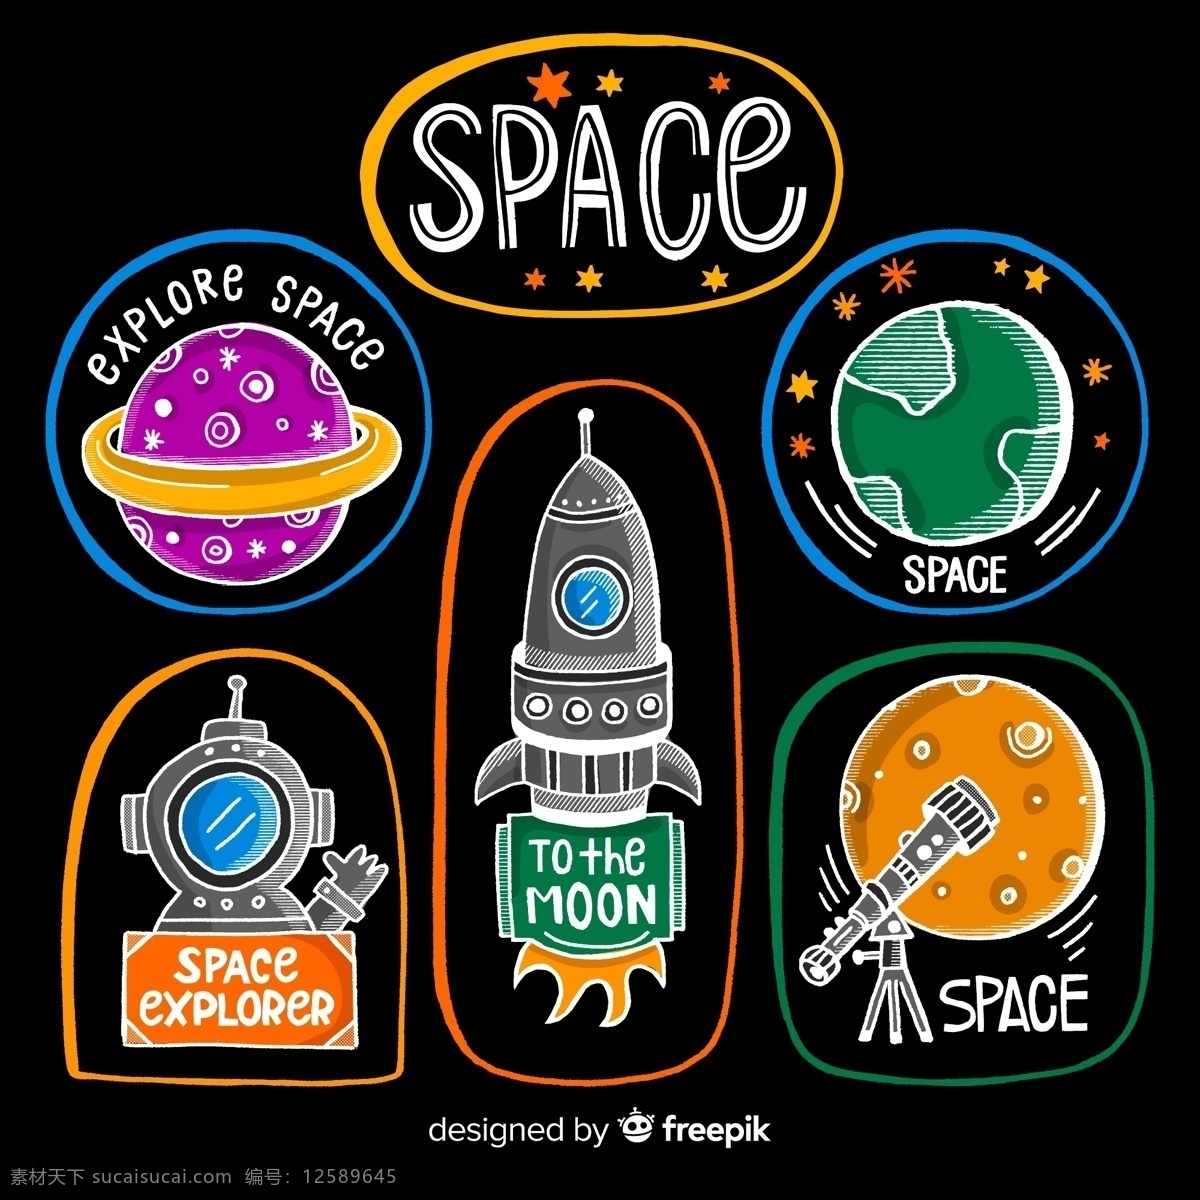 彩色 太空 探索 标签 矢量图 土星 地球 火箭 天文望远镜 宇航员 科技 动漫动画